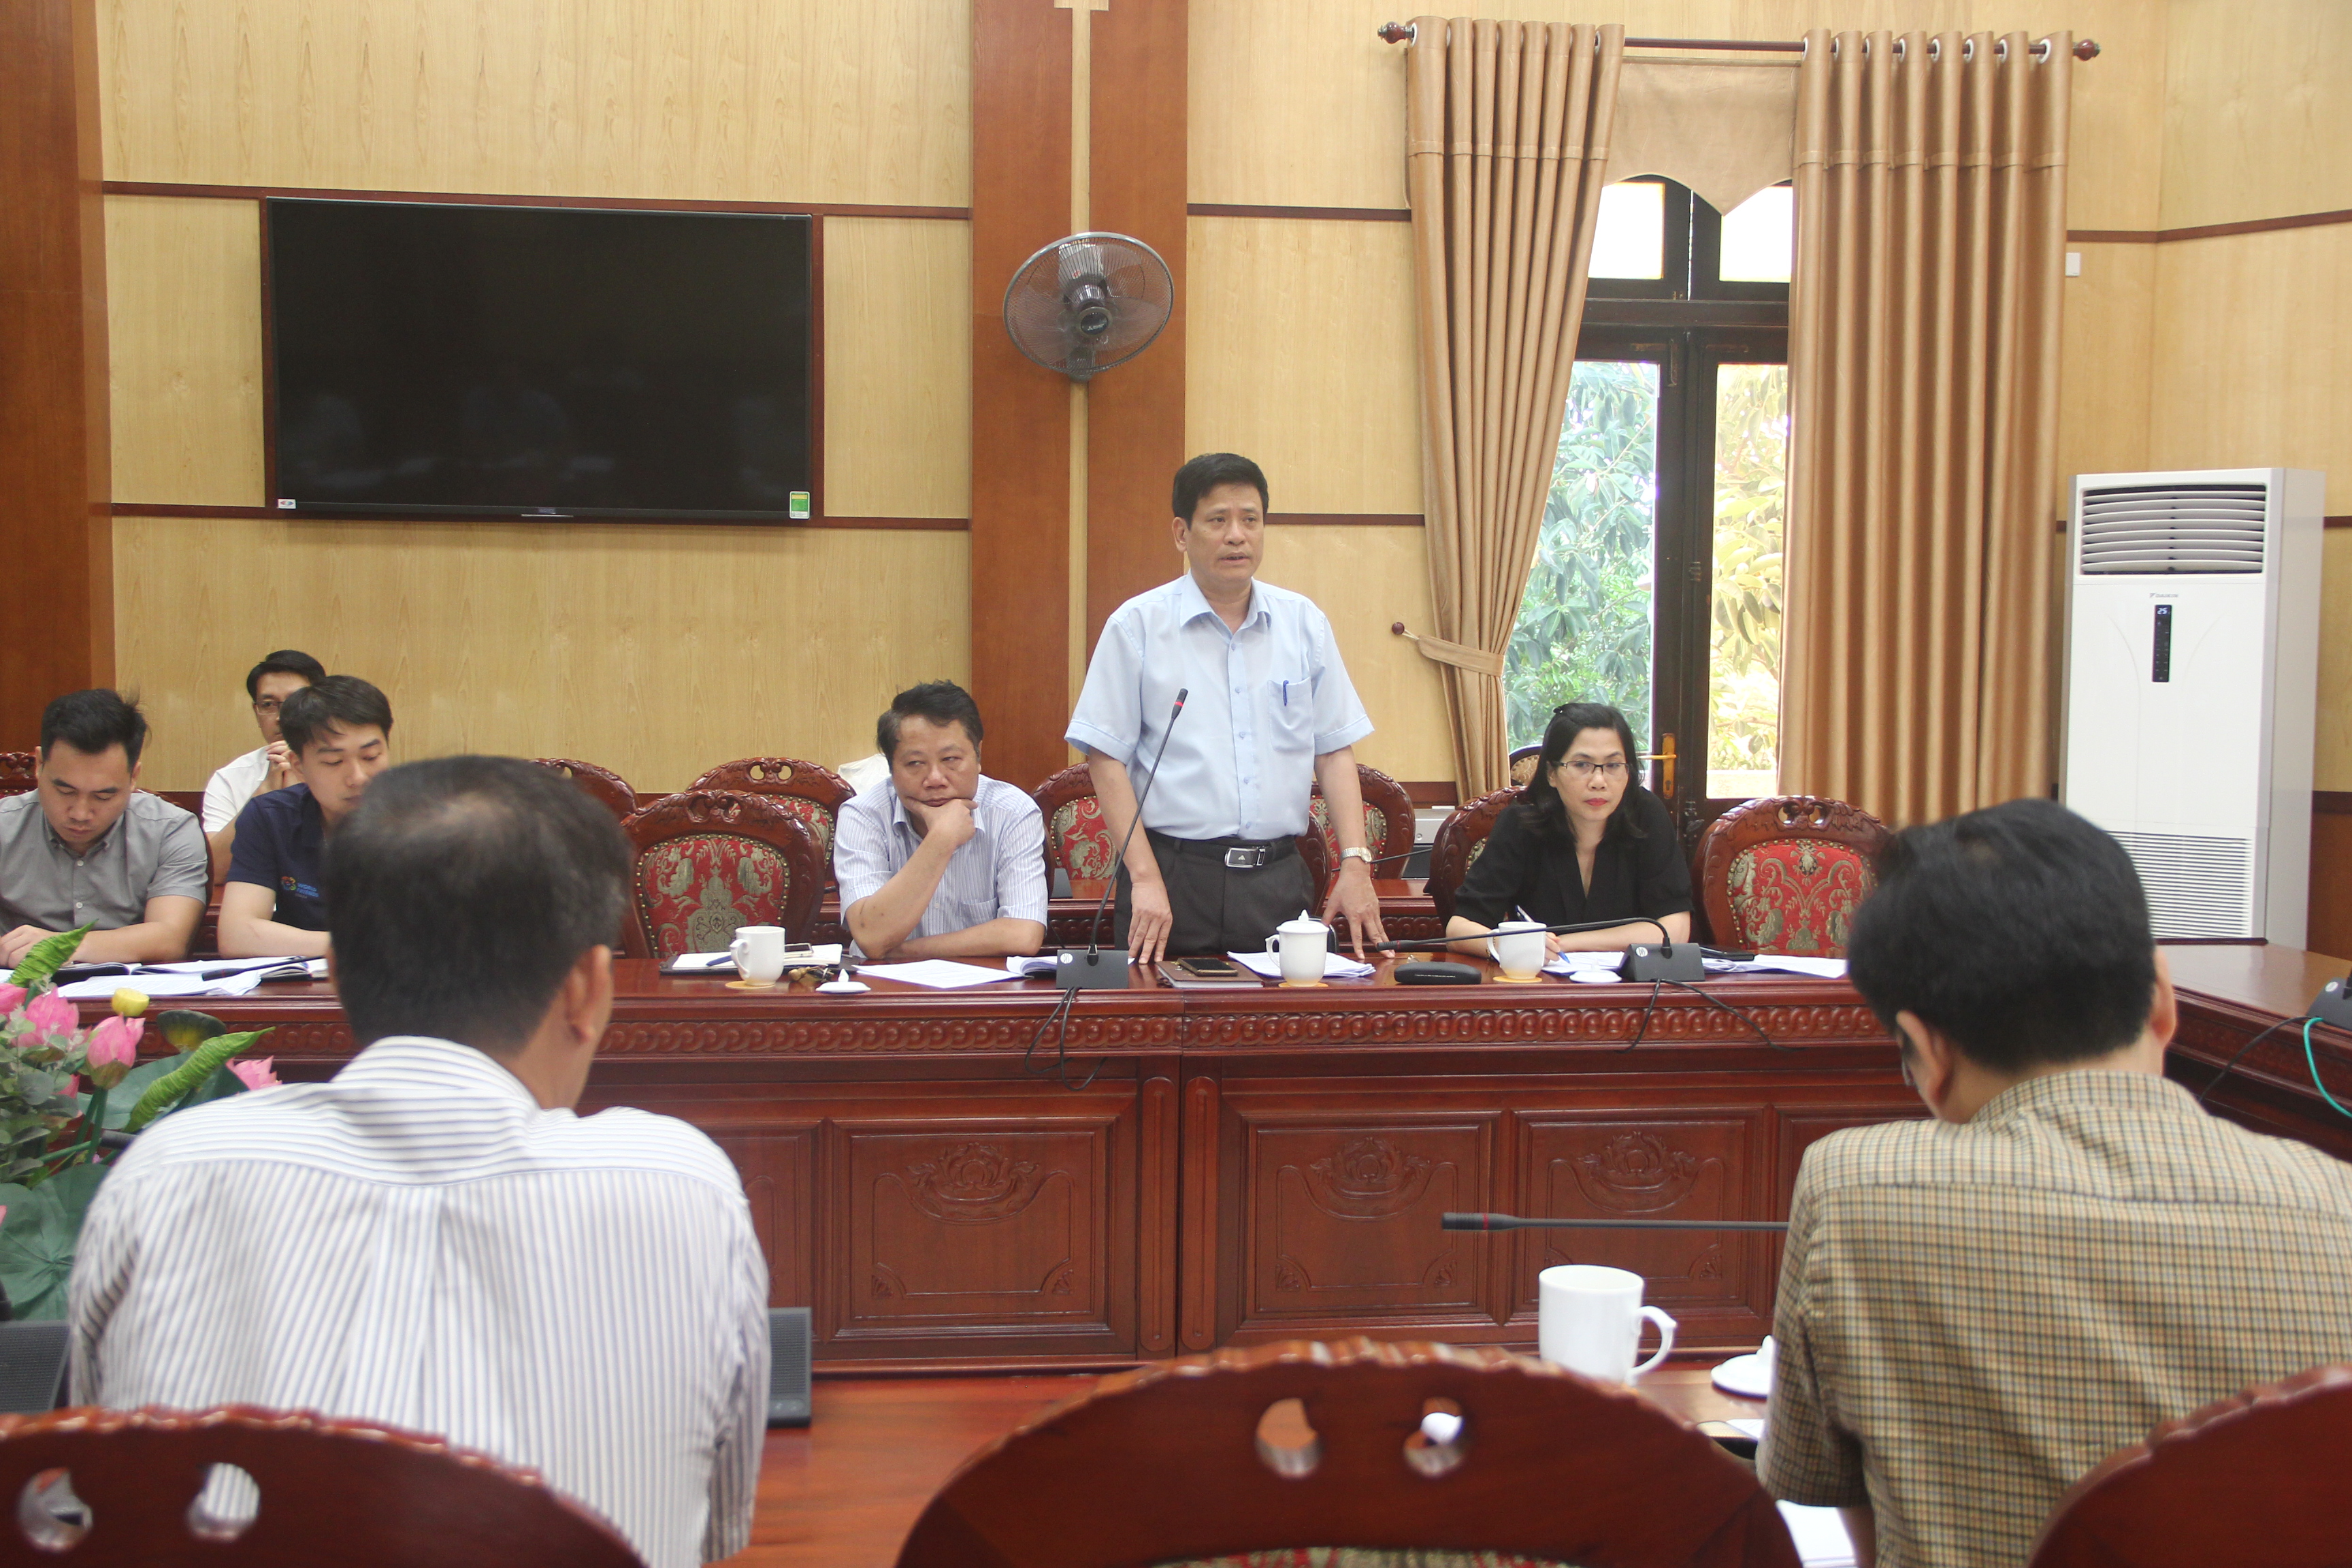 Hội nghị xúc tiến đầu tư tỉnh Thanh Hóa năm 2020 dự kiễn diễn ra ngày 12-6